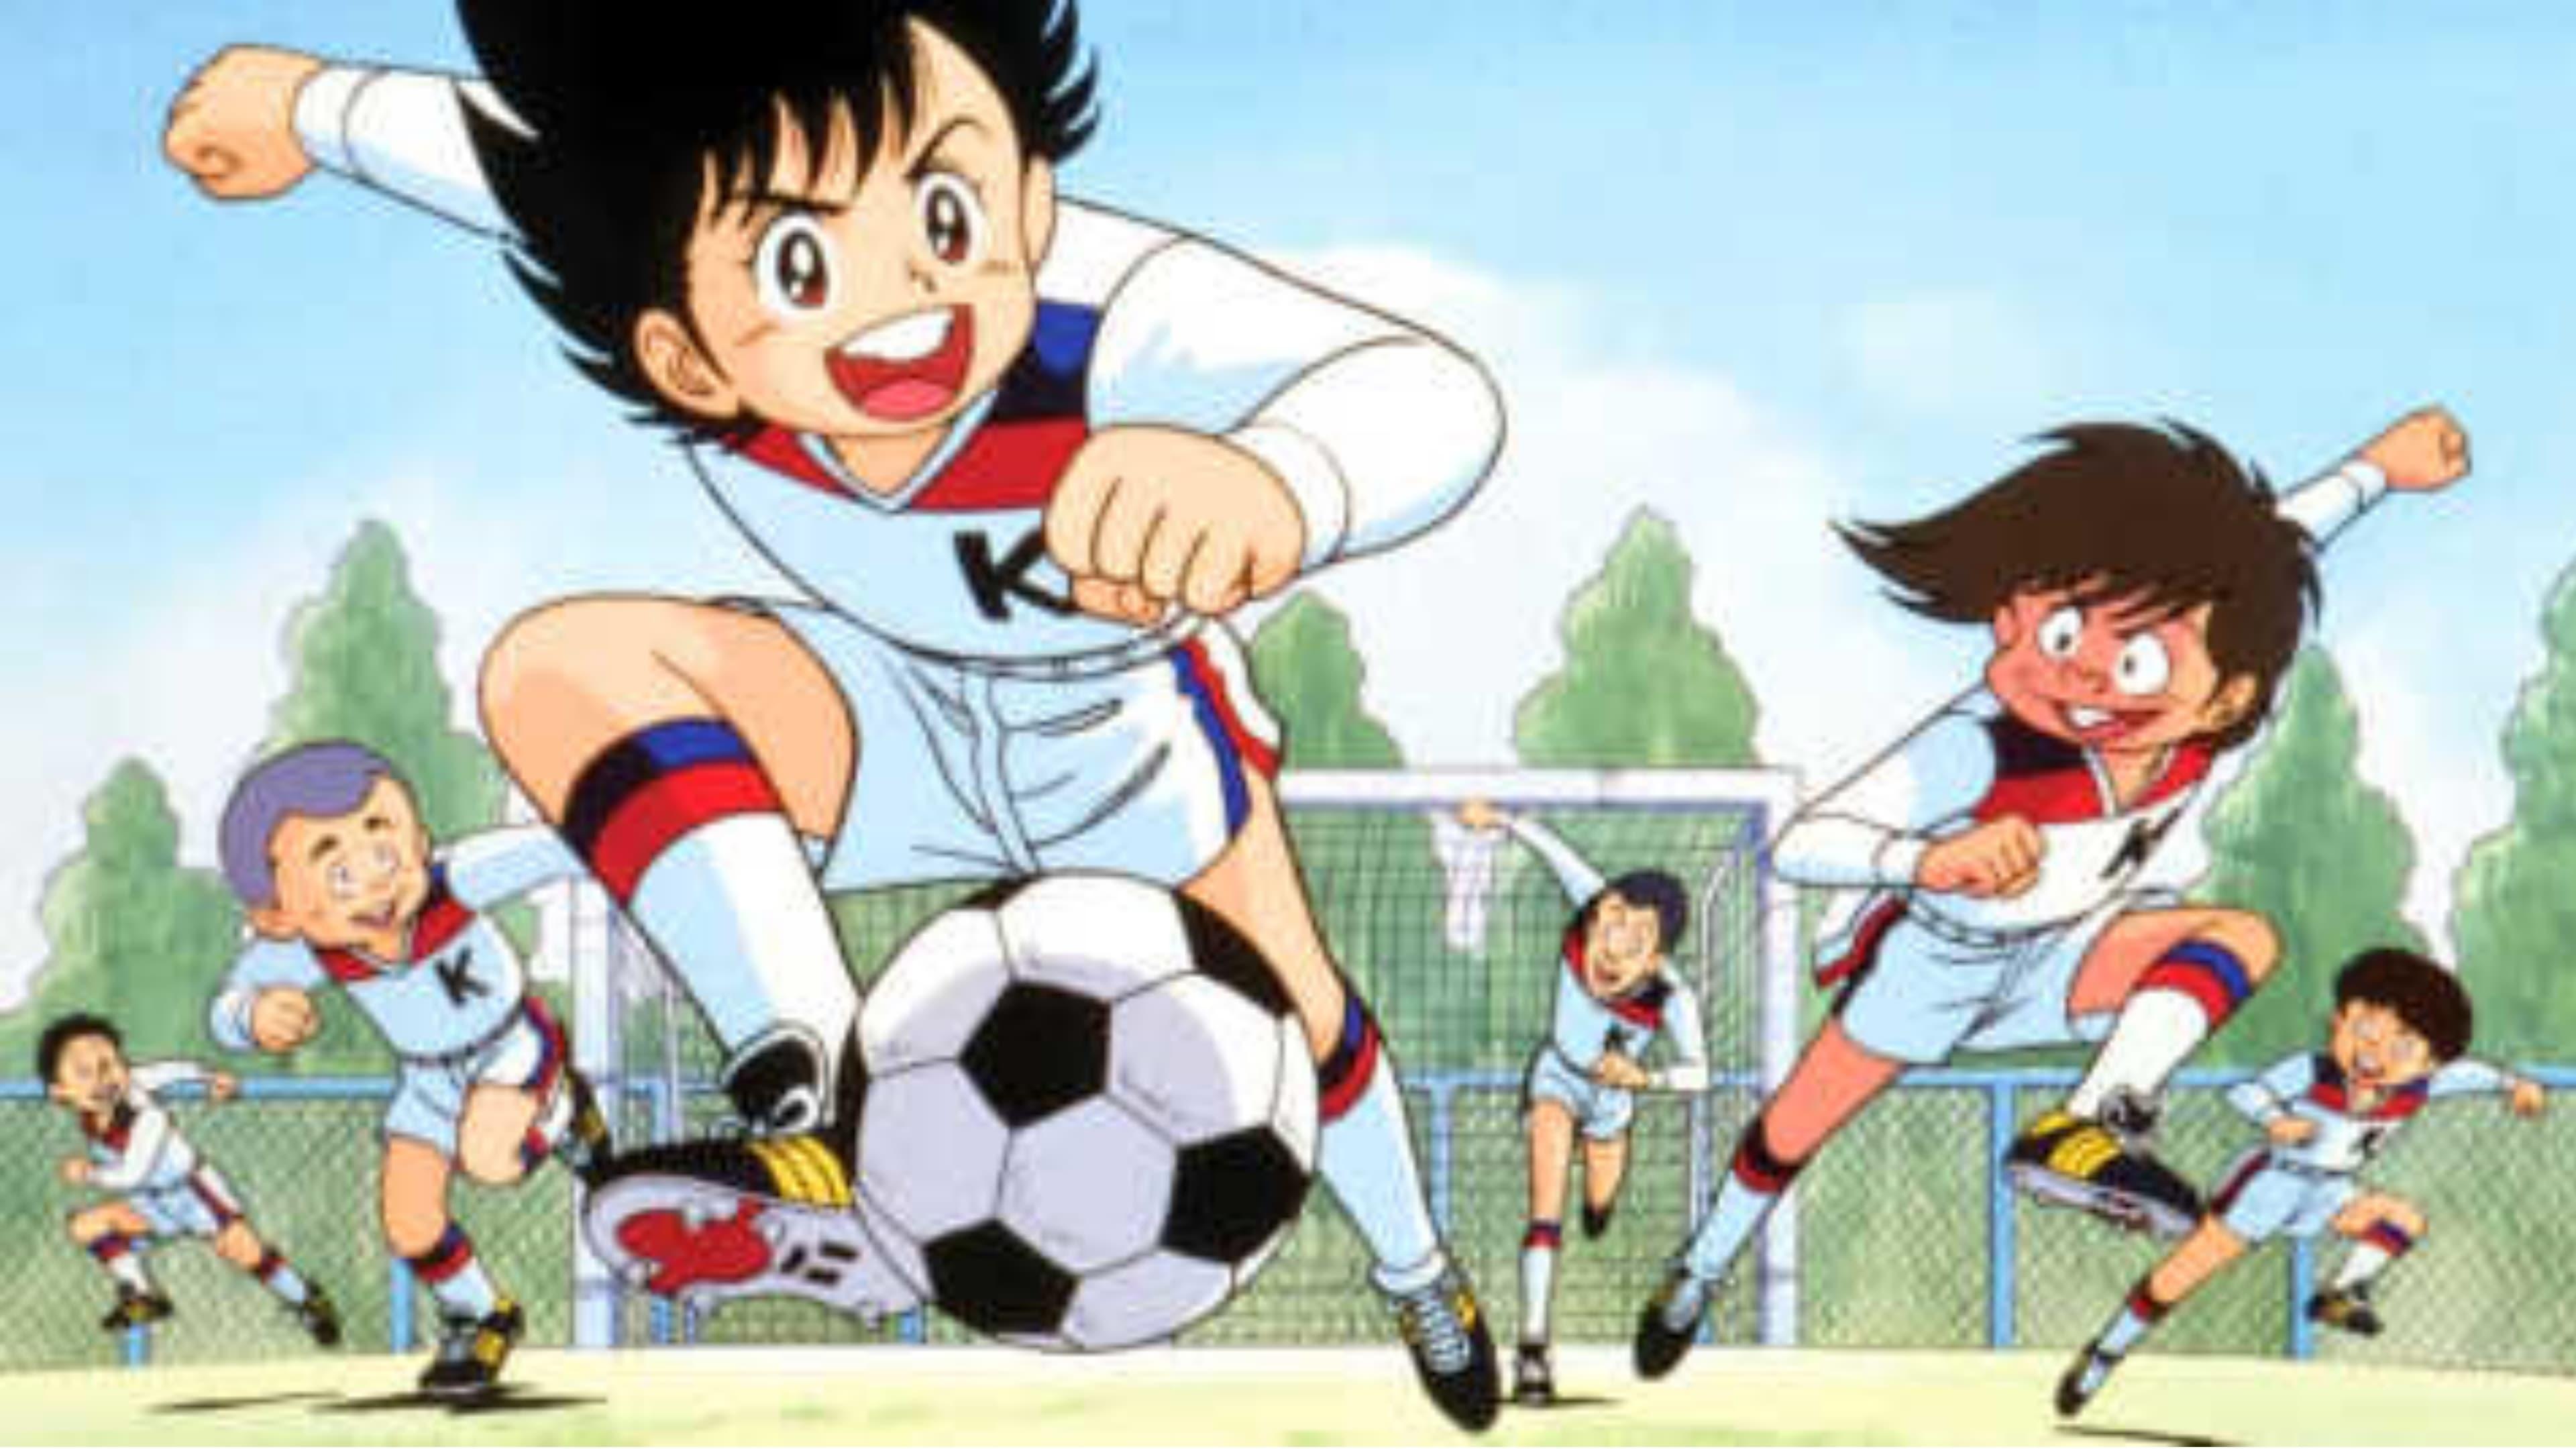 Ganbare! Kickers: Bokutachi no Densetsu backdrop